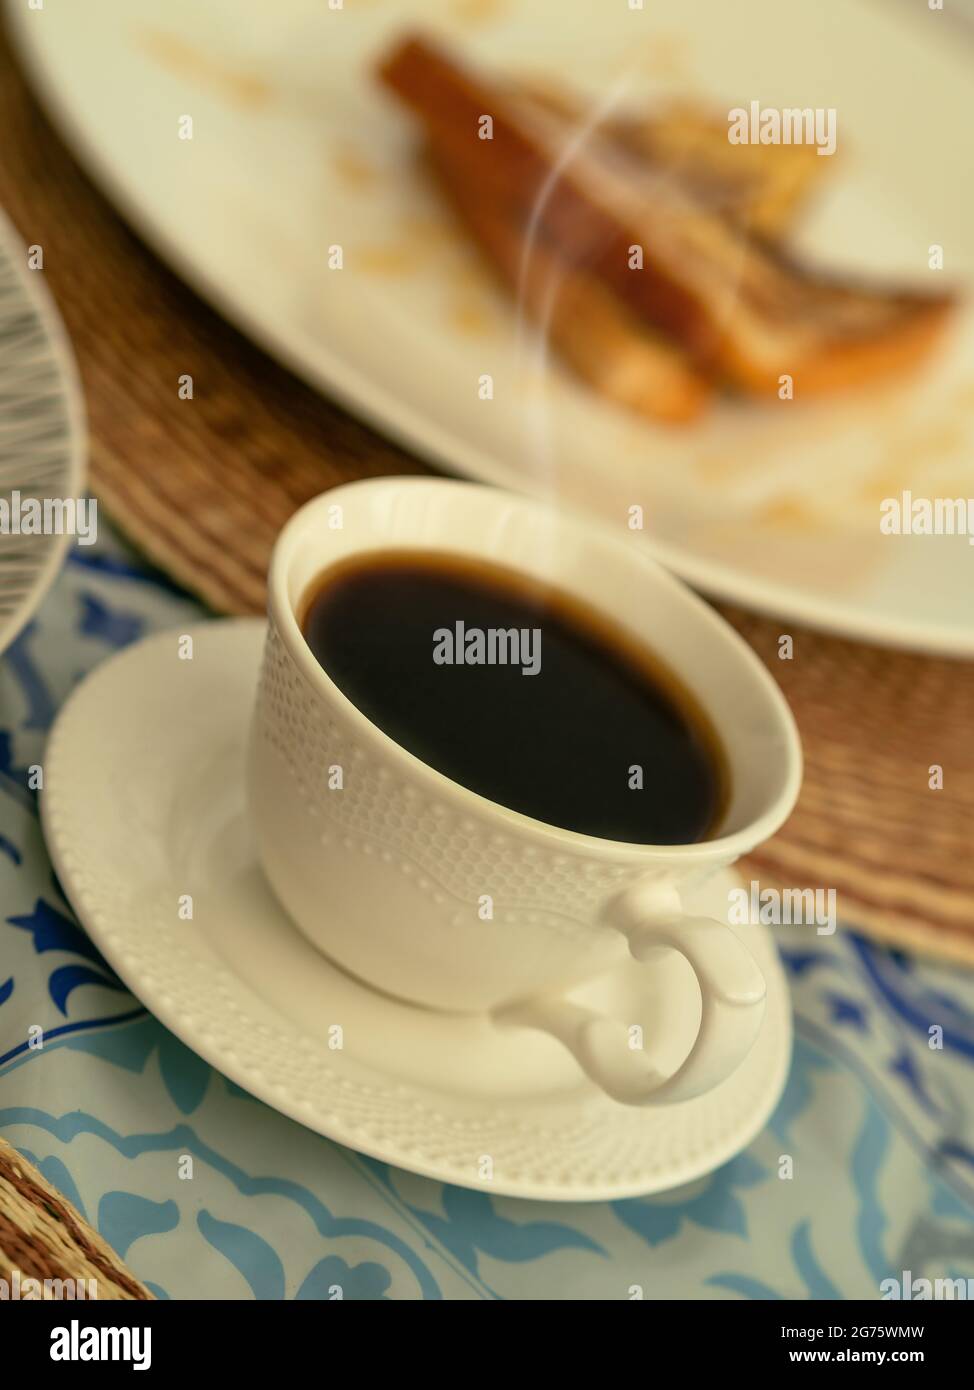 Eine weiße Tasse dampfenden schwarzen Kaffee, begleitet von französischem Toast zum Frühstück oder Brunch Stockfoto